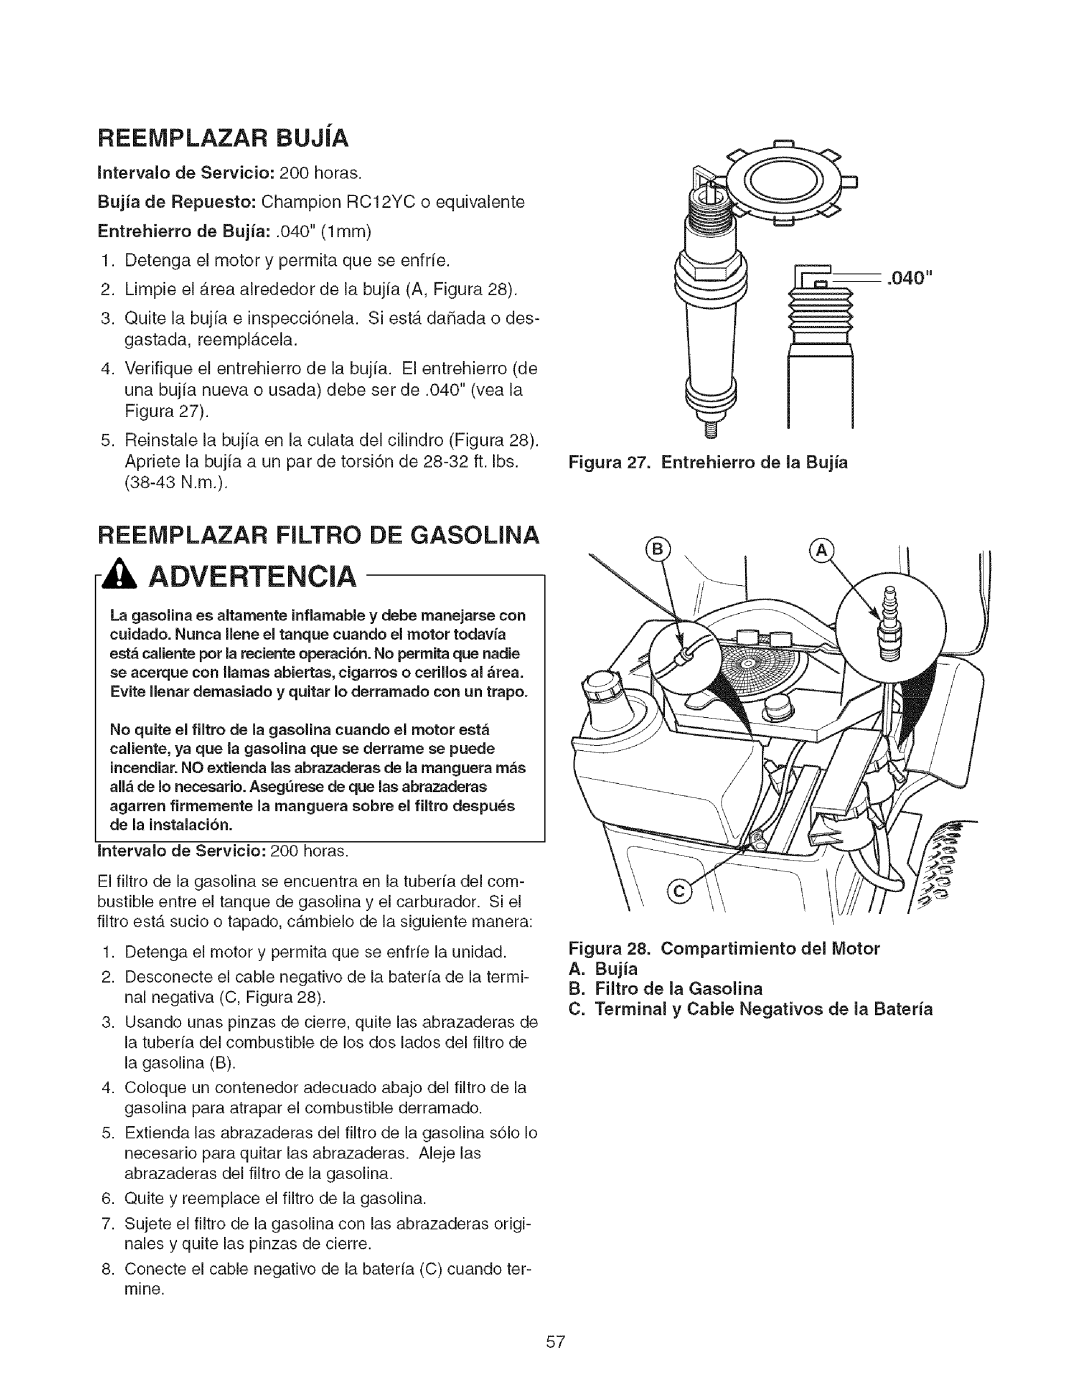 Craftsman 107.2777 REEIVIPLAZAR BUJiA, Reeiviplazar Filtro De Gasolina, Advertencia, Figura 27. Entrehierro de Ja Bujia 